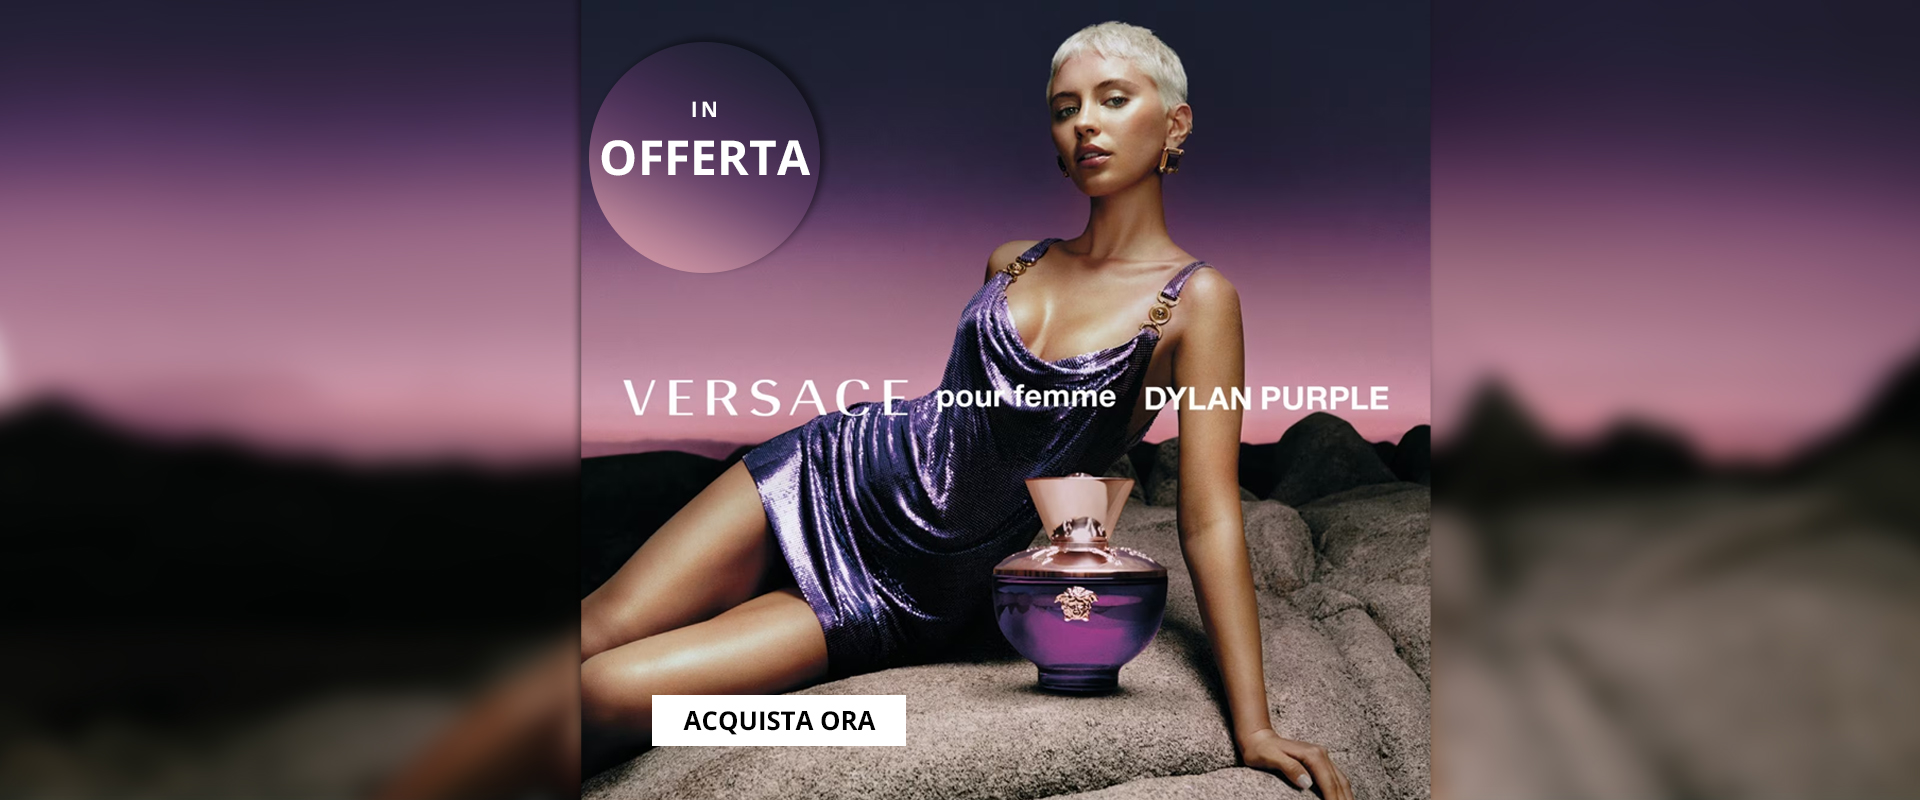 https://www.wolfprofumi.com/prodotto/versace-dylan-purple-pour-femme-eau-de-parfum-per-donna/